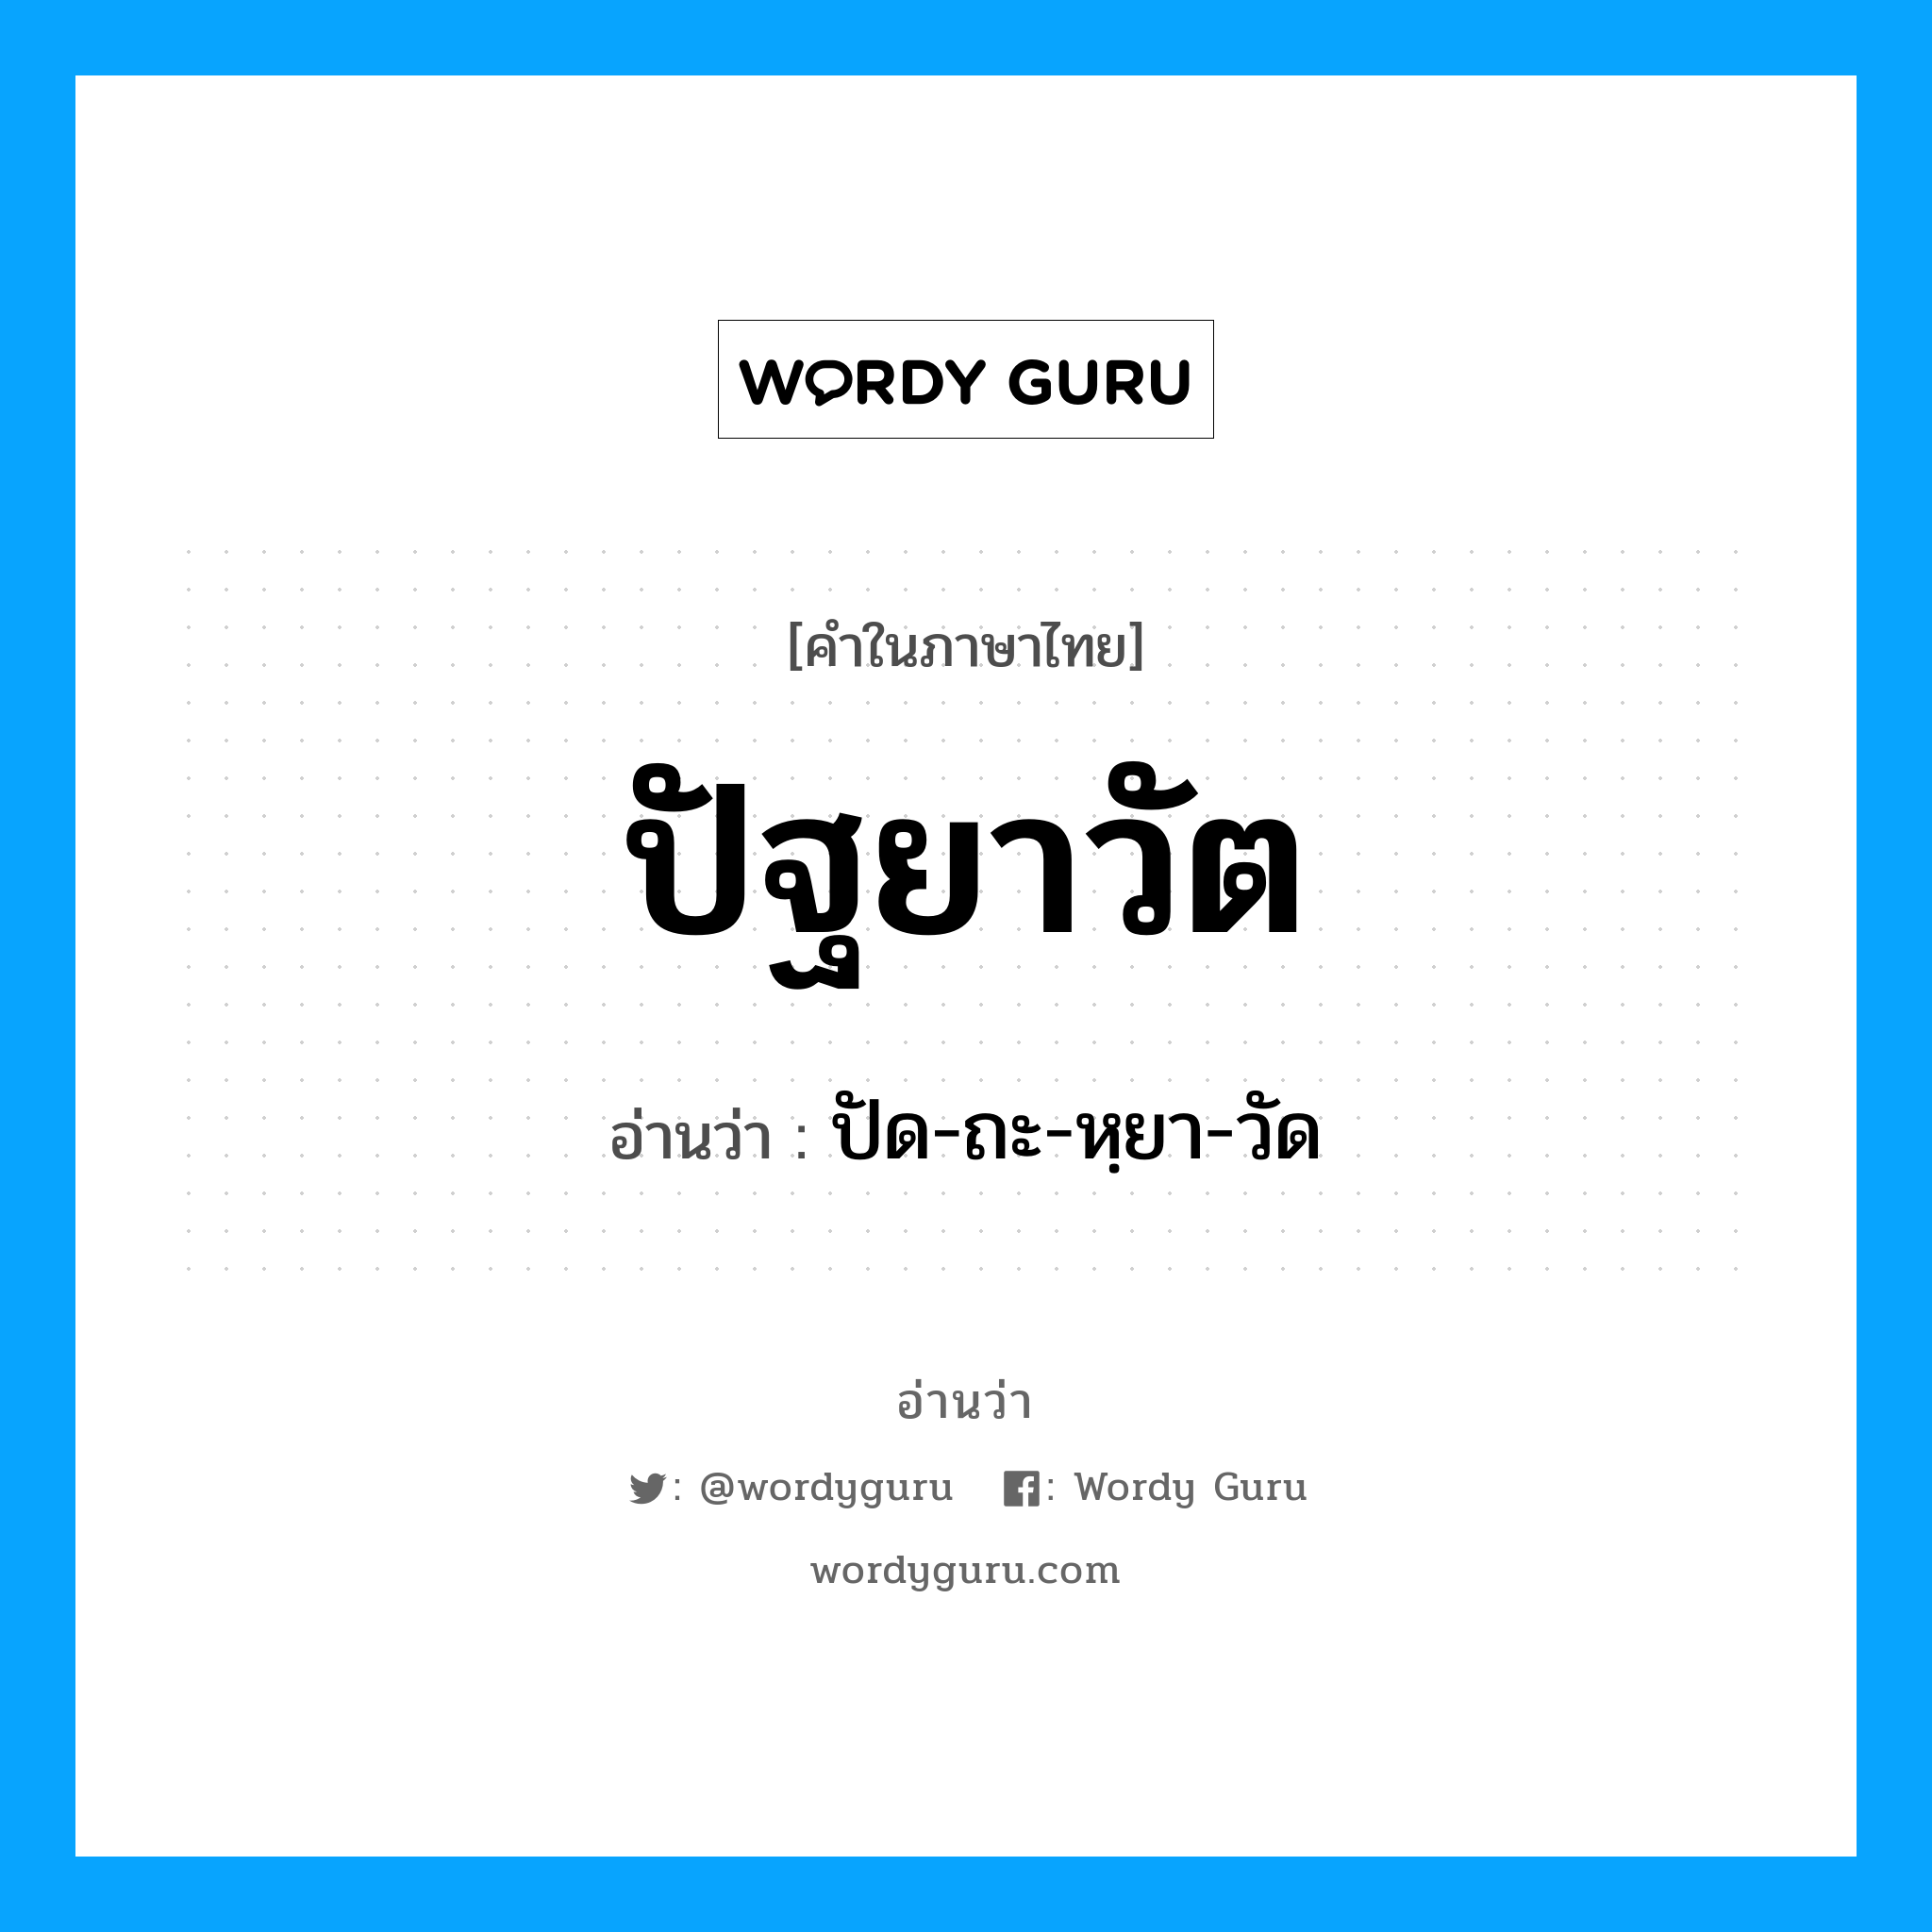 ปัด-ถะ-หฺยา-วัด เป็นคำอ่านของคำไหน?, คำในภาษาไทย ปัด-ถะ-หฺยา-วัด อ่านว่า ปัฐยาวัต